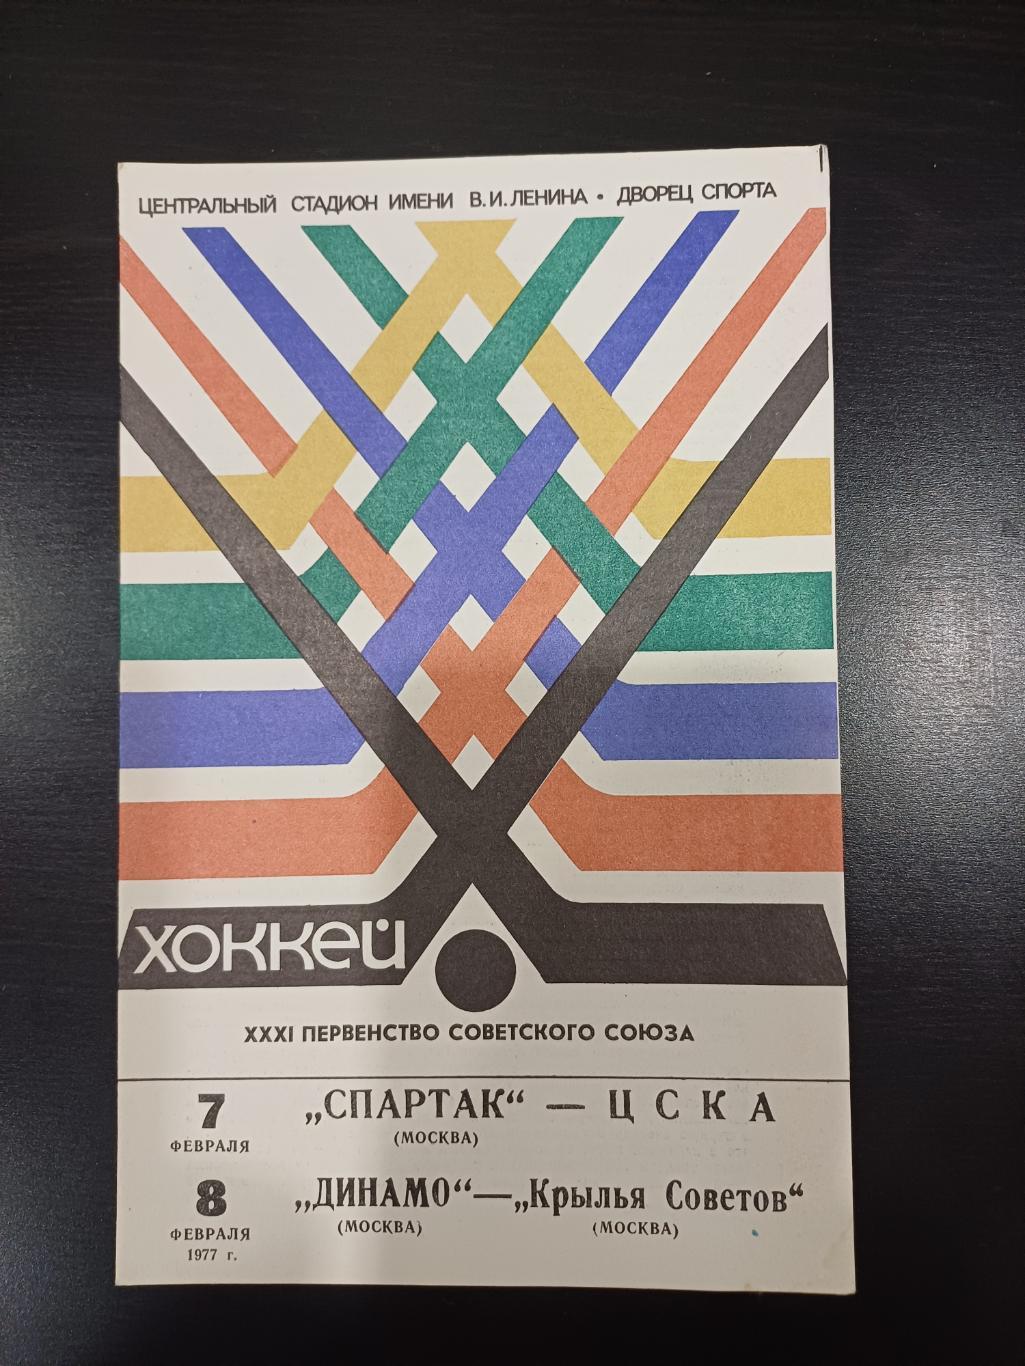 Спартак (Москва) - Цска/Динамо (Москва) - Крылья Советов 1977